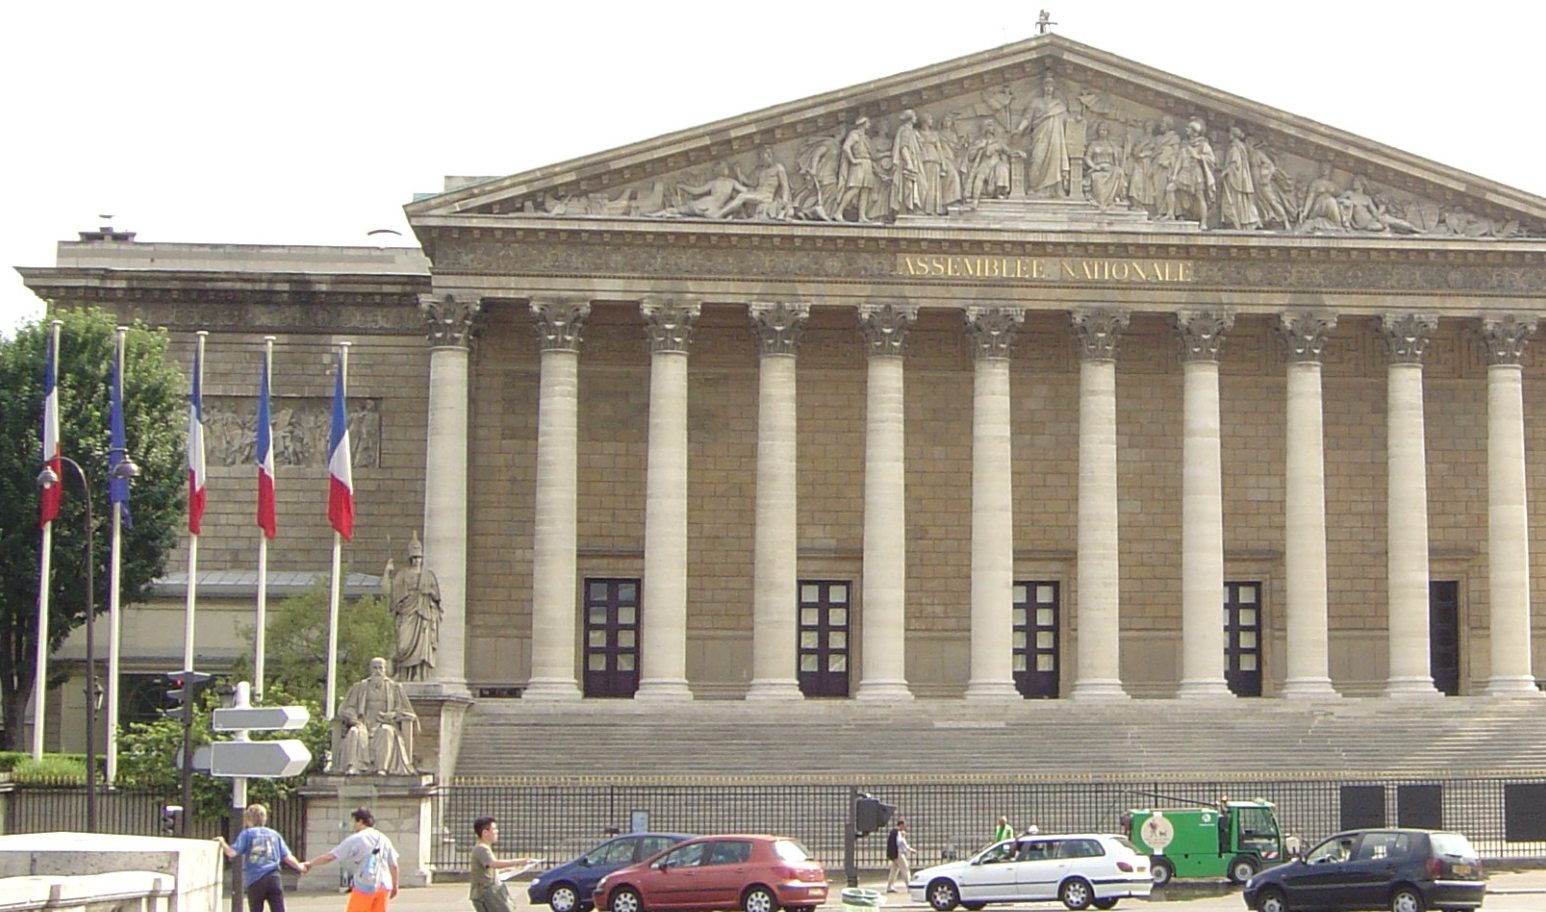 Francia. La legge Gaillot sull’aborto ad un passo dall’approvazione 1